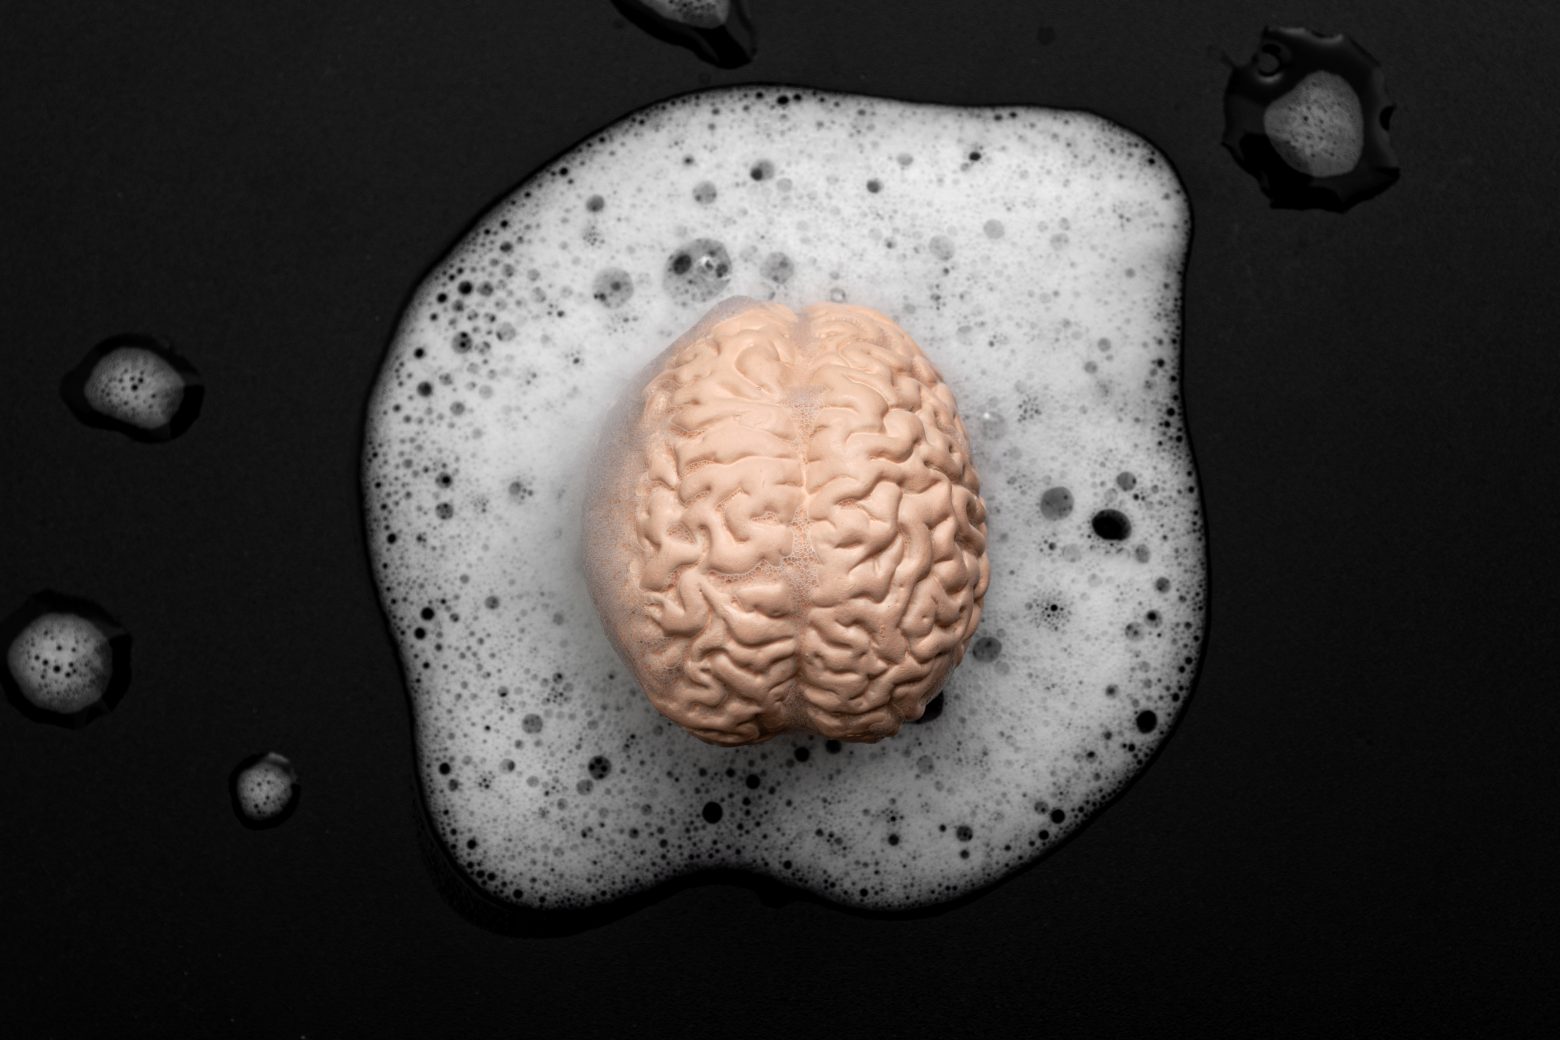 Pranie mózgu, obniżenie krytycznego myślenia i koncepcja kontroli umysłu z praniem ludzkiego mózgu w bańkach mydlanych, odizolowane na czarnym tle